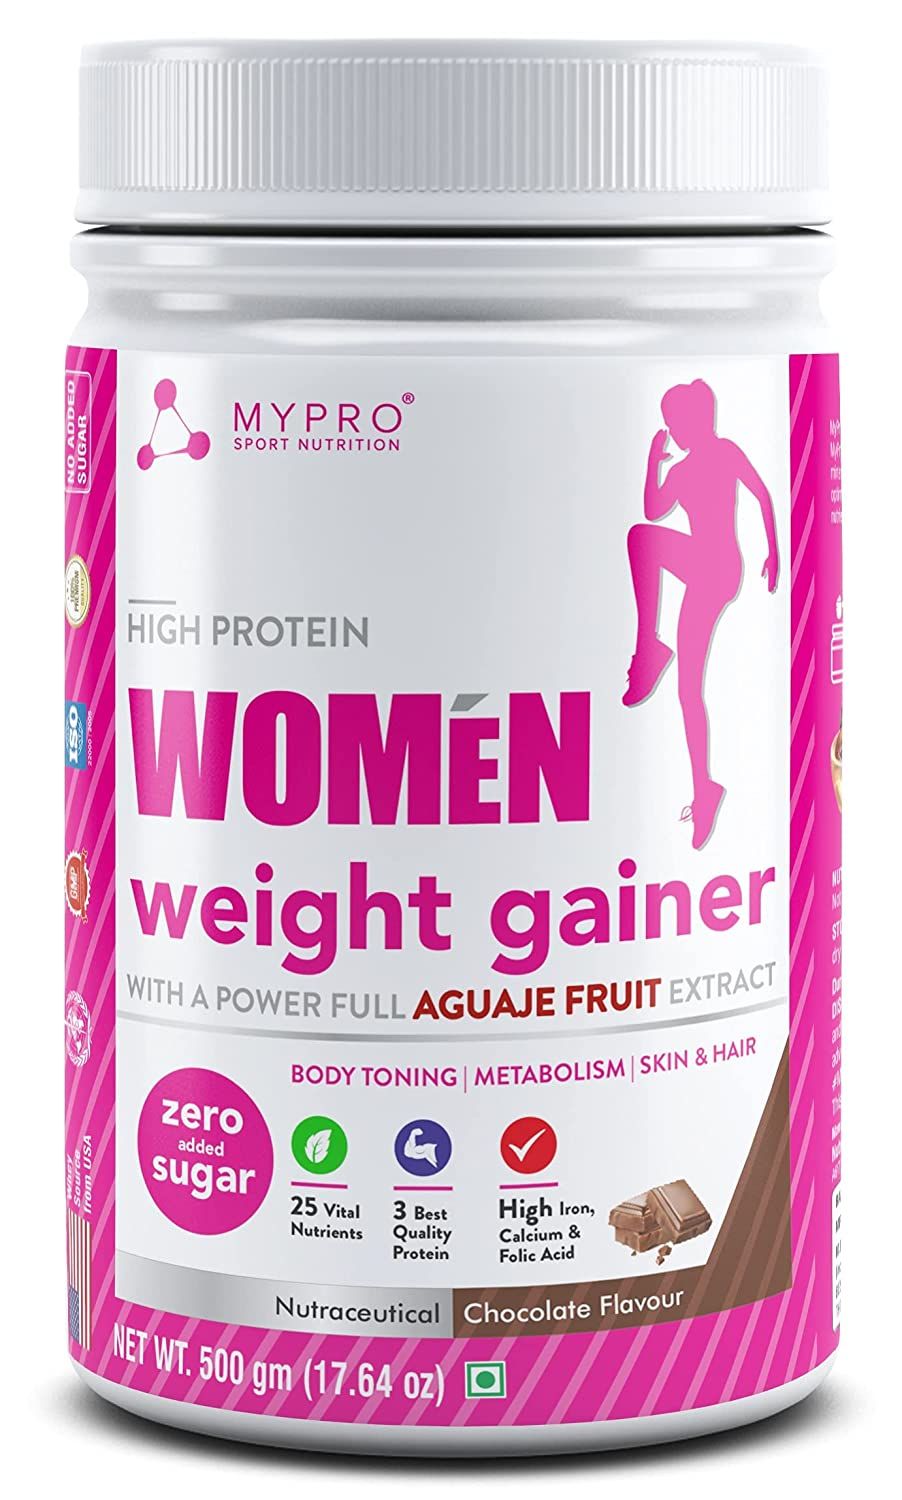 Mypro Sport Nutrition High Protein Women Weight Gainer Image